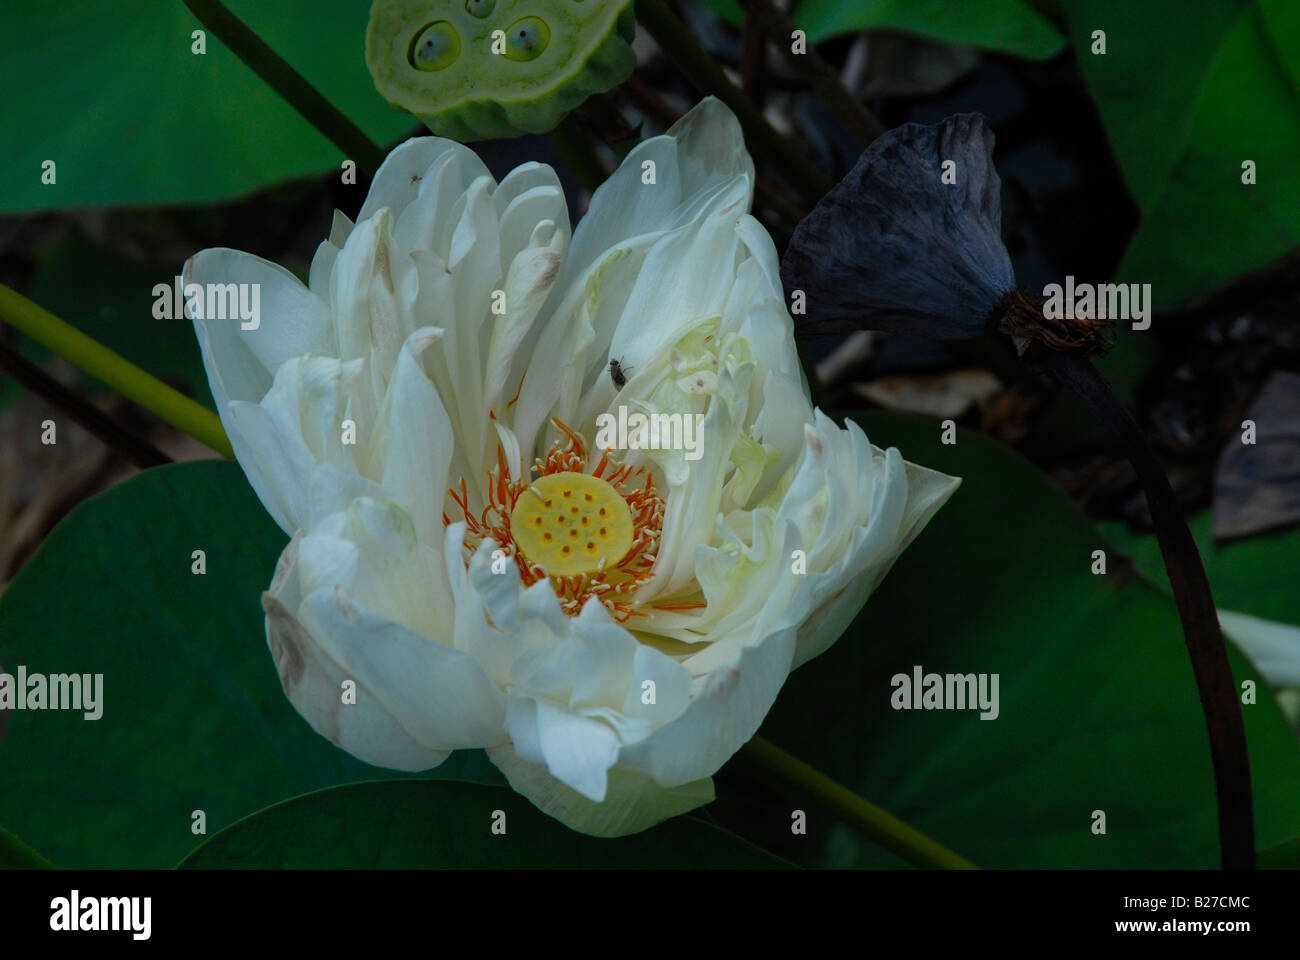 White lotus flower Stock Photo